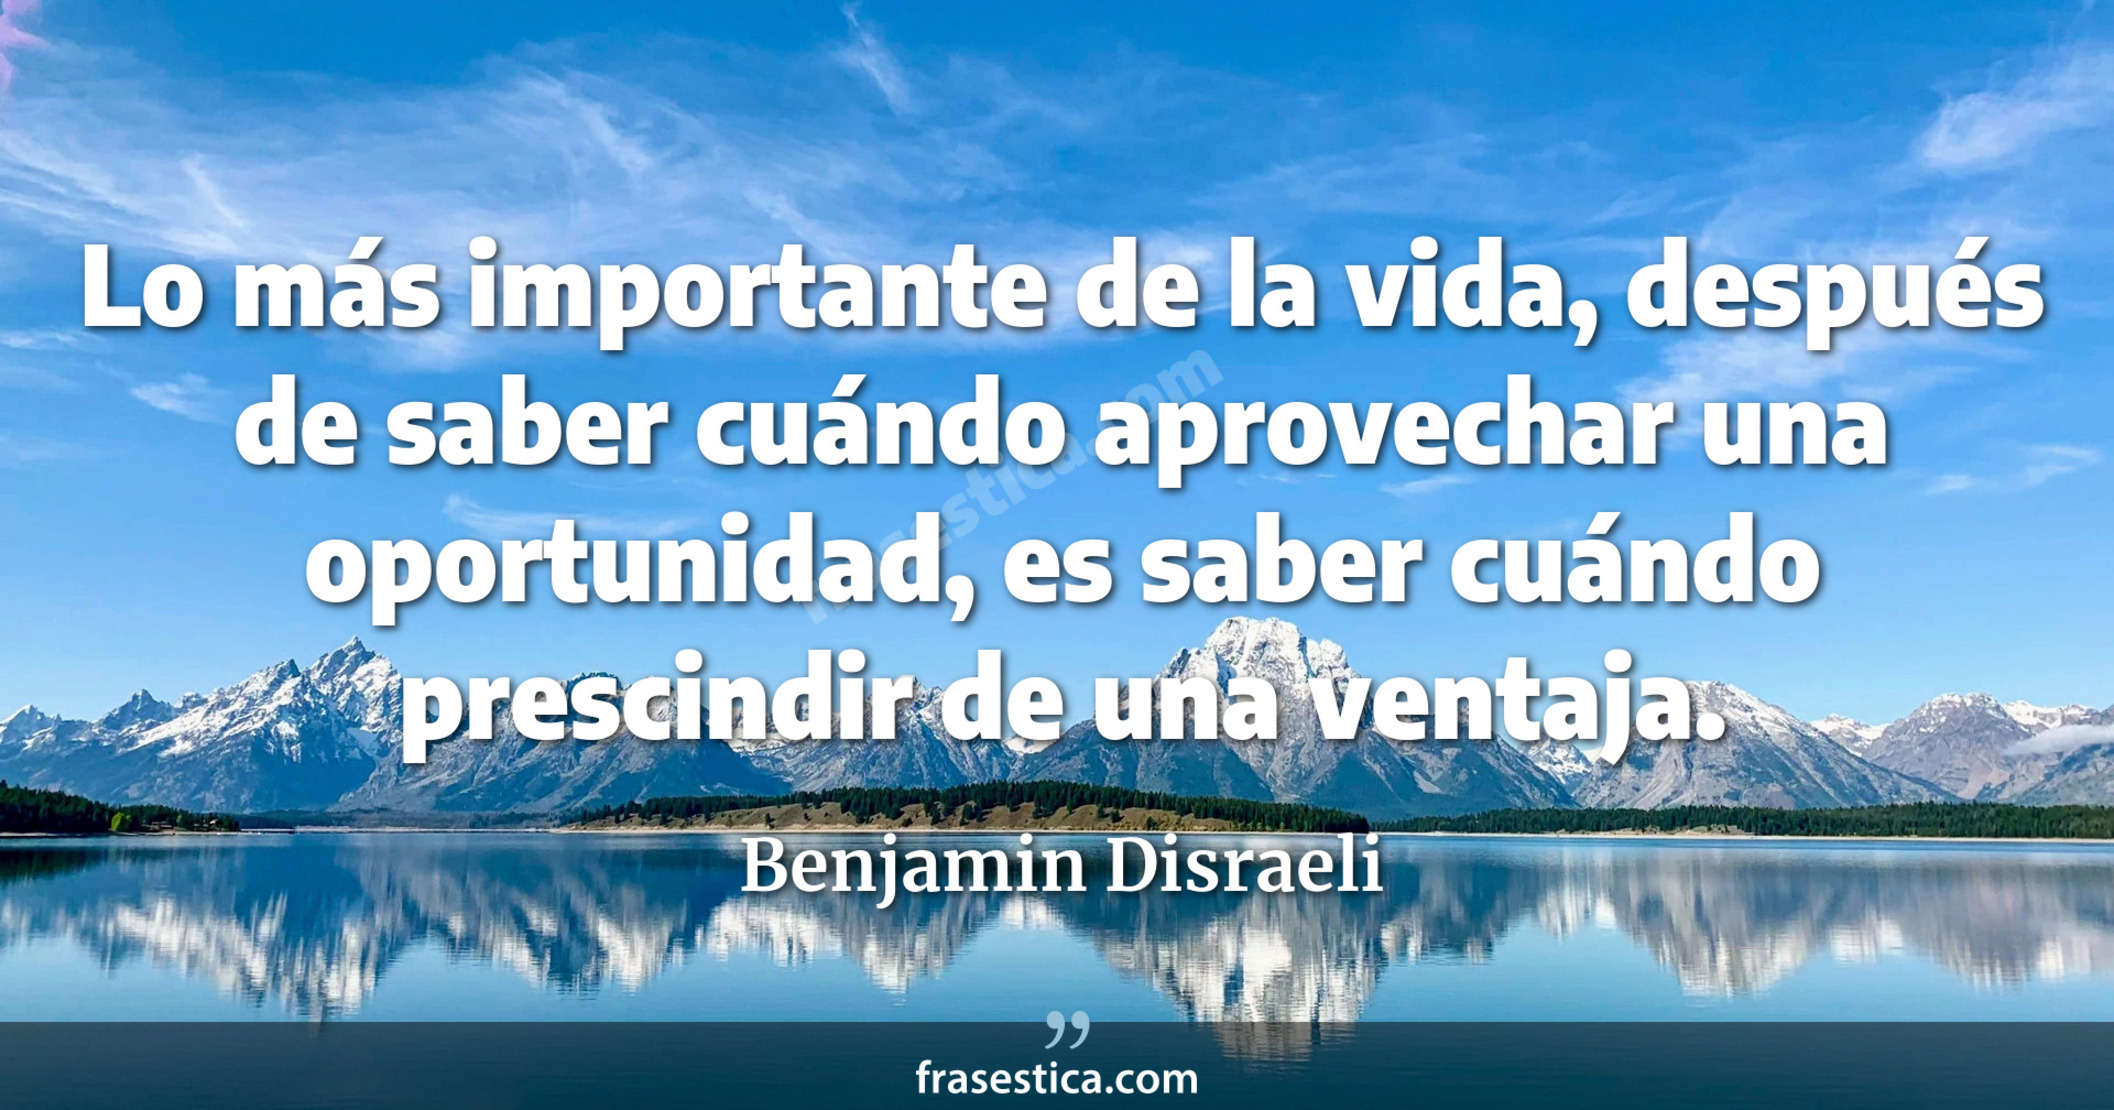 Lo más importante de la vida, después de saber cuándo aprovechar una oportunidad, es saber cuándo prescindir de una ventaja. - Benjamin Disraeli